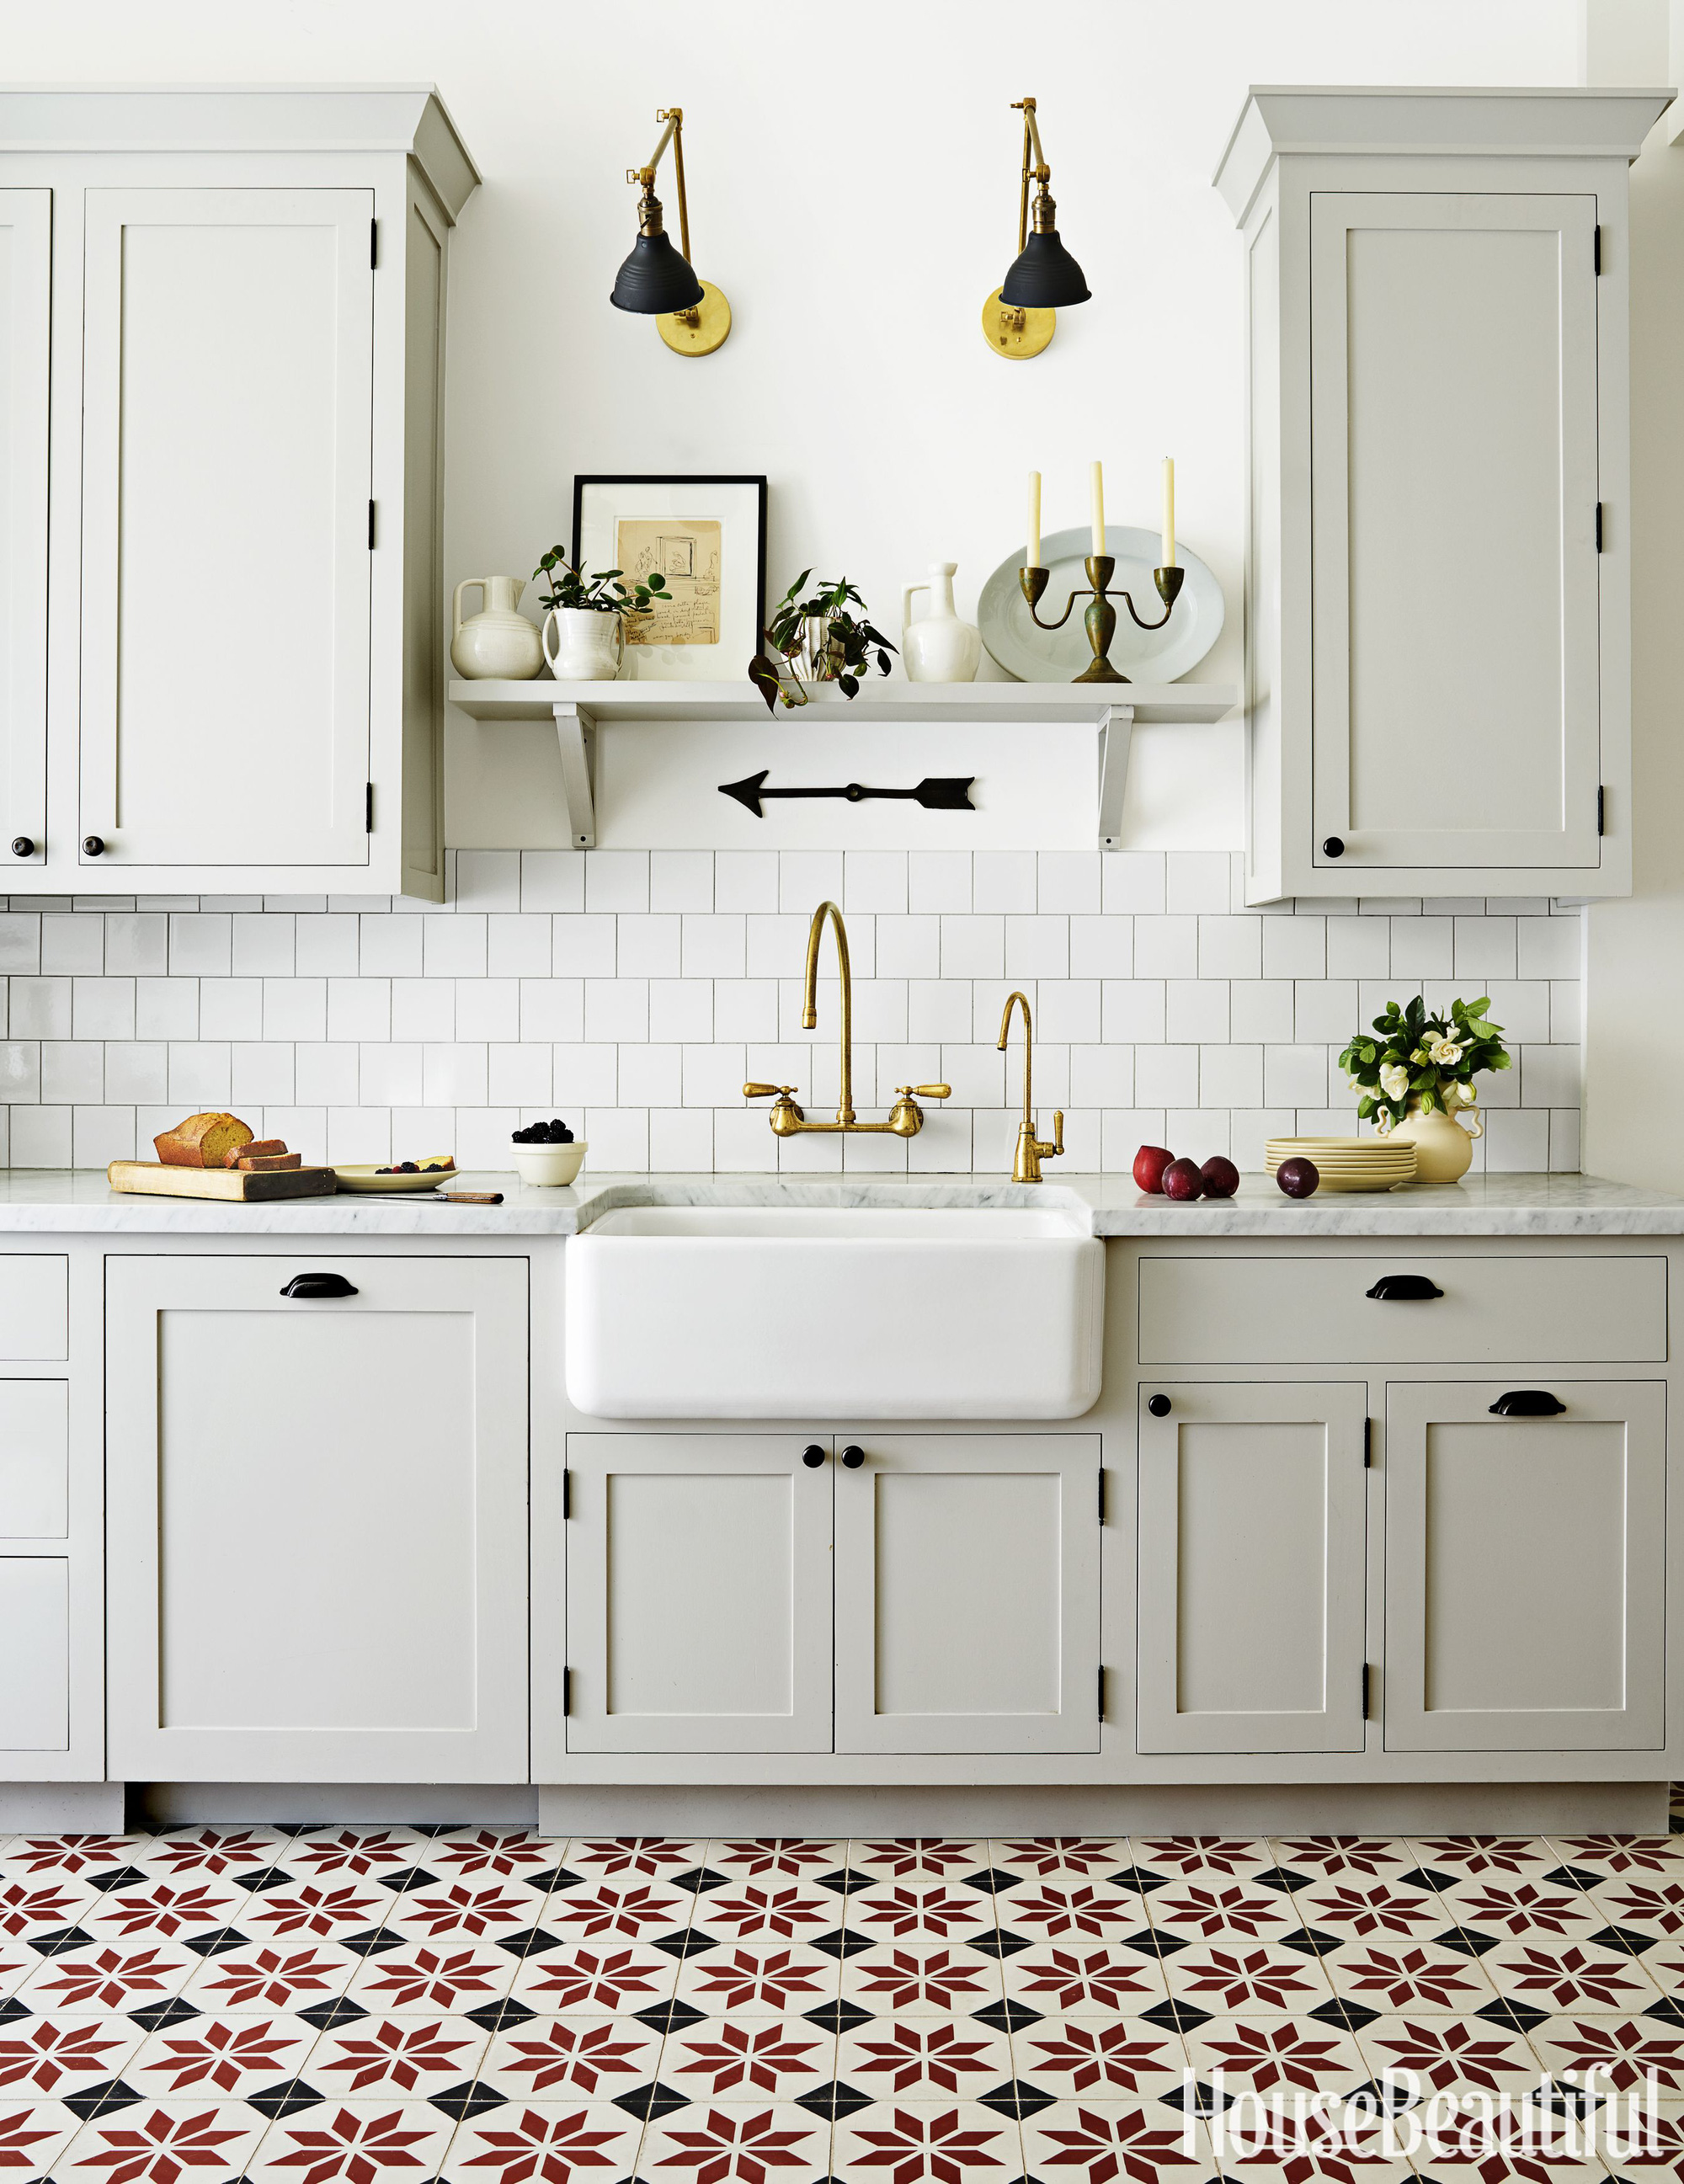 Những ý tưởng thiết kế siêu dễ giúp bạn sở hữu căn bếp đẹp mơ màng ấn tượng - Ảnh 7.